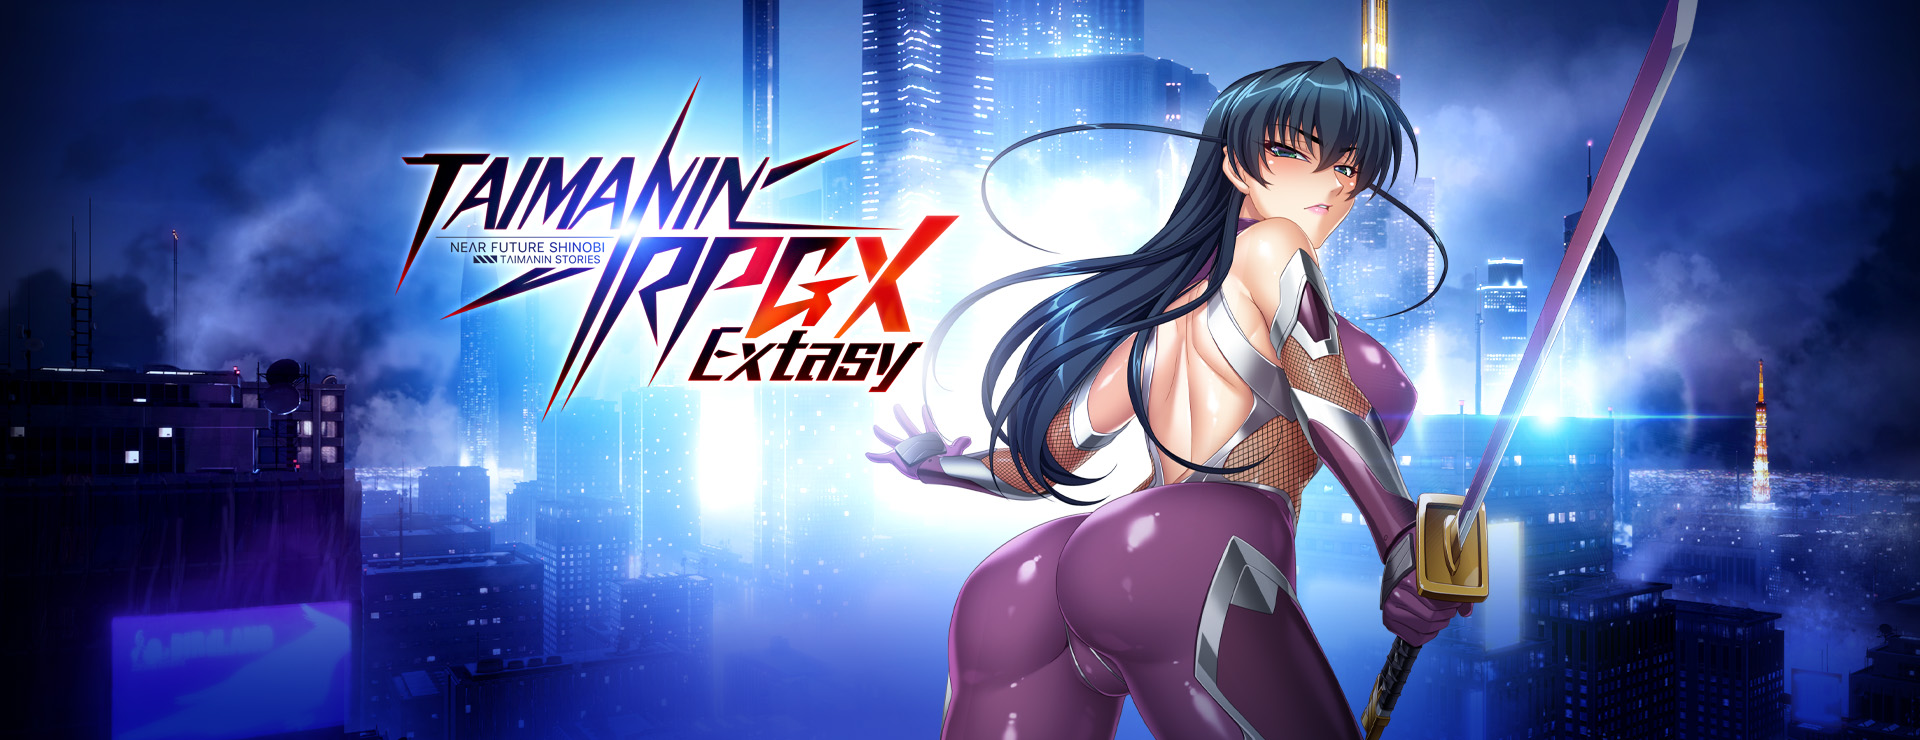 Taimanin RPGX Extasy - RPG Juego